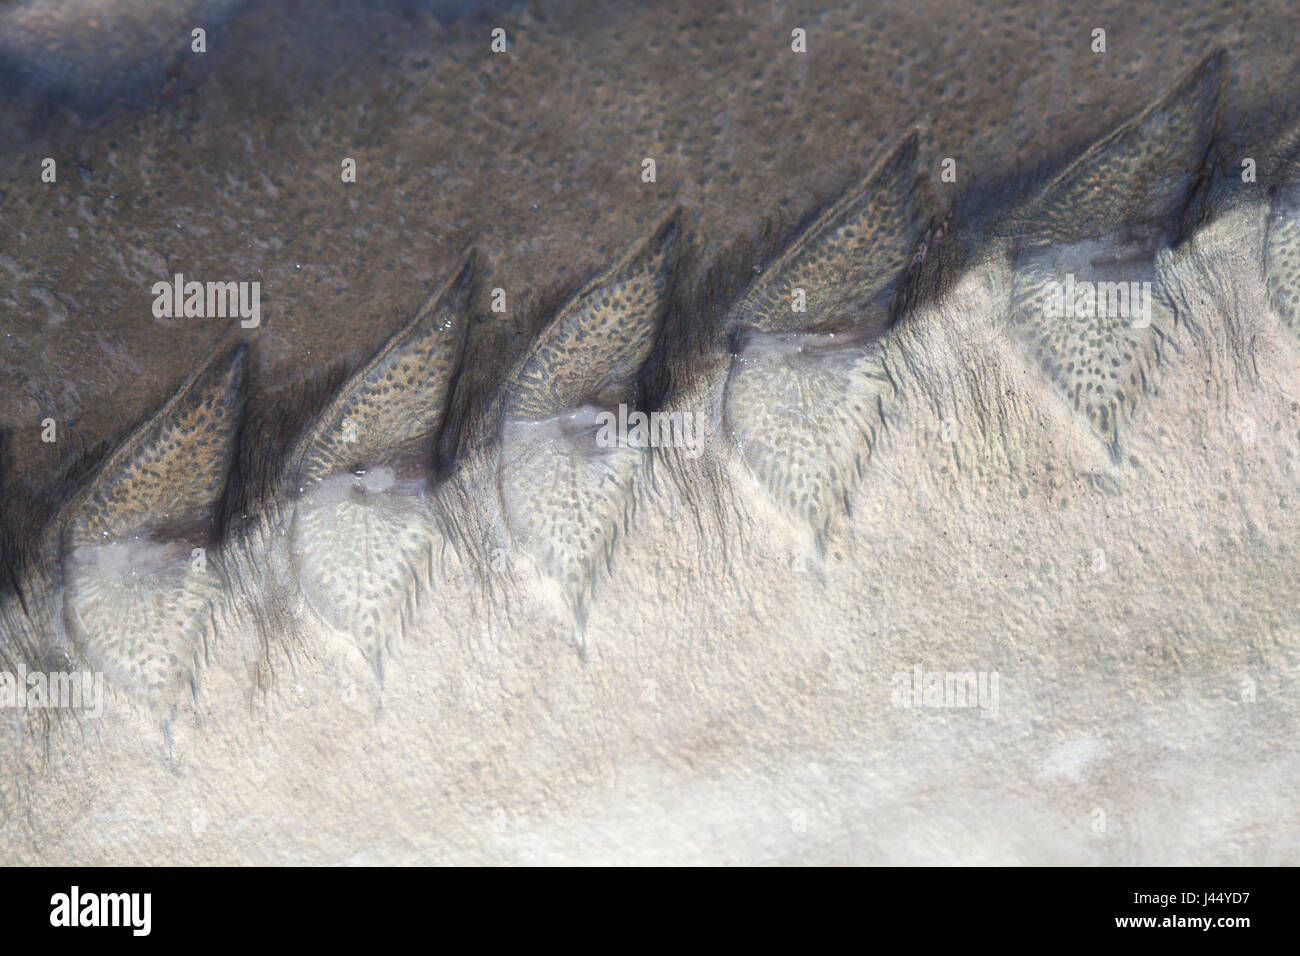 Detalle de las escalas (placas óseas) de un esturión del Atlántico Foto de stock